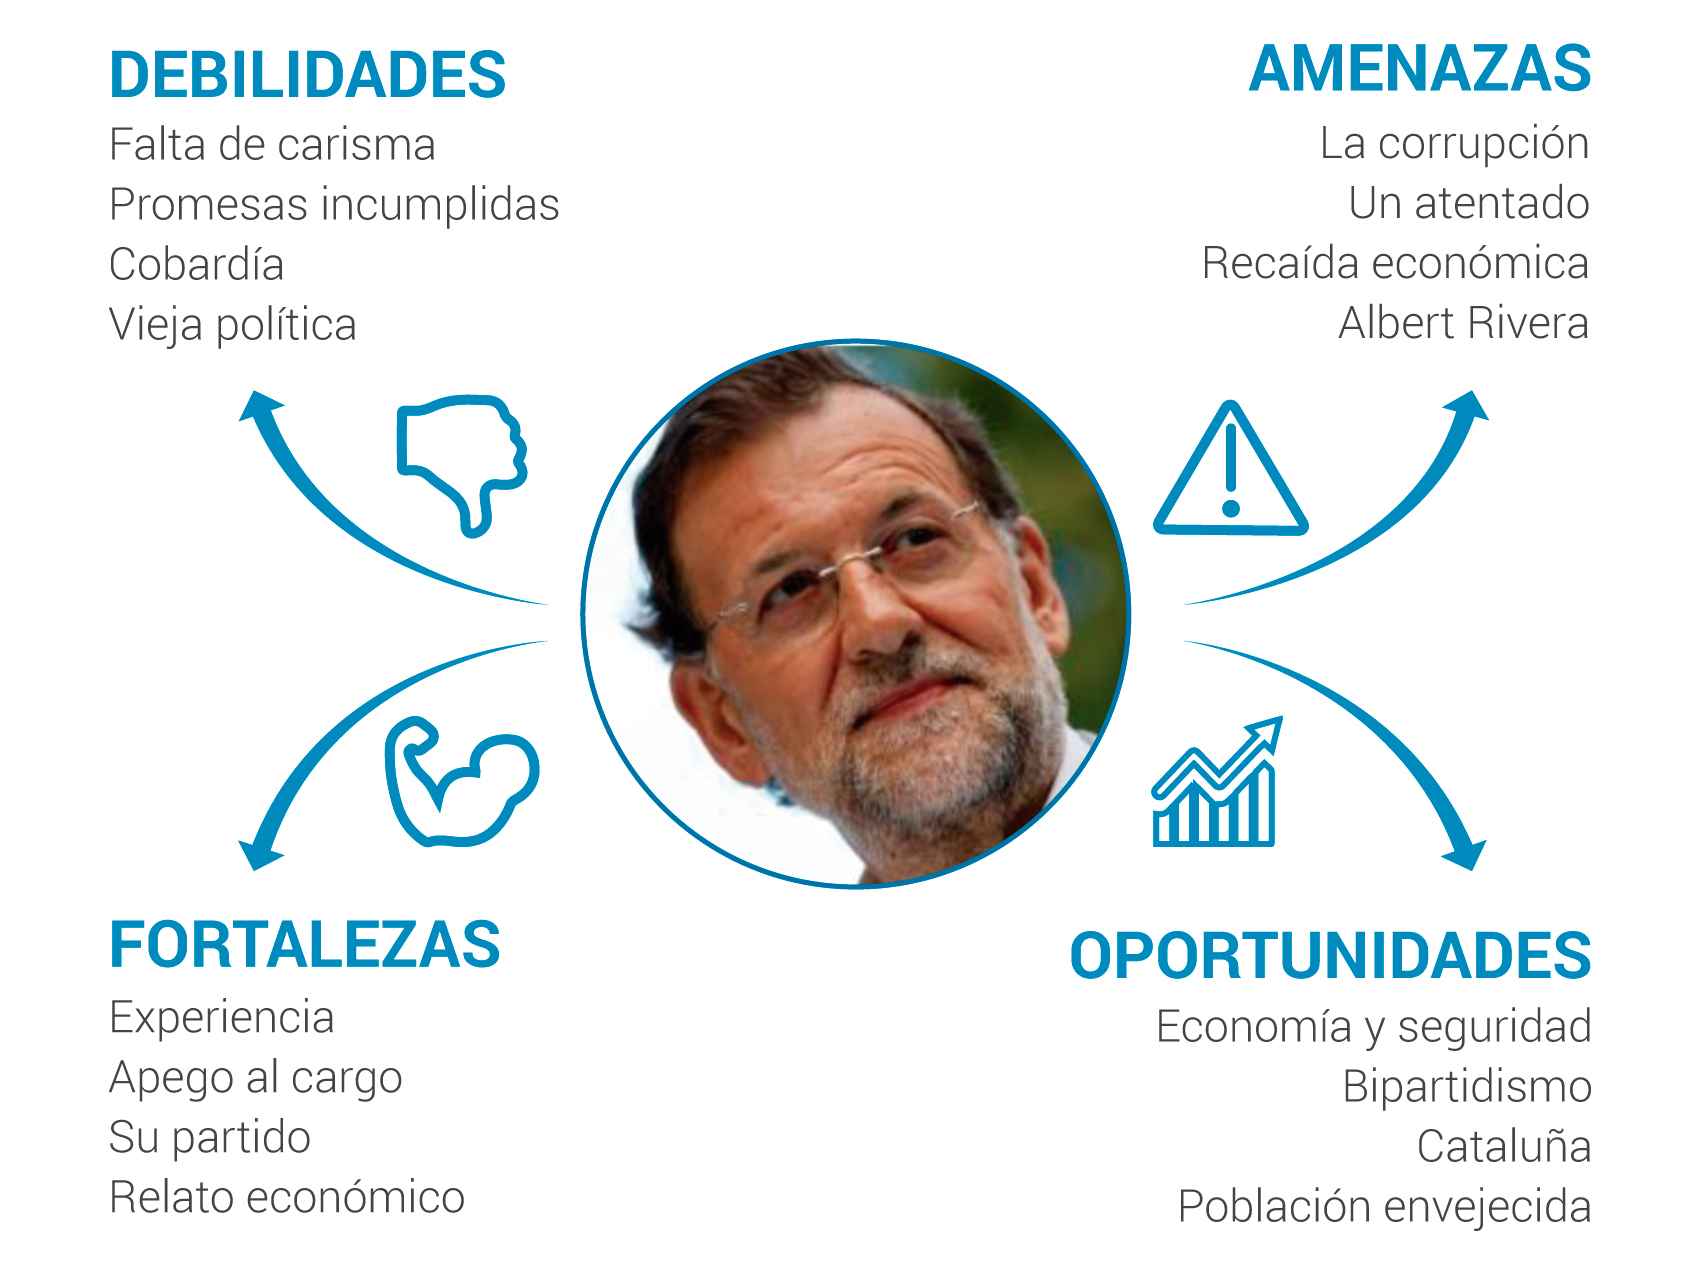 El DAFO de Rajoy: le falta carisma pero transmite experiencia y seguridad